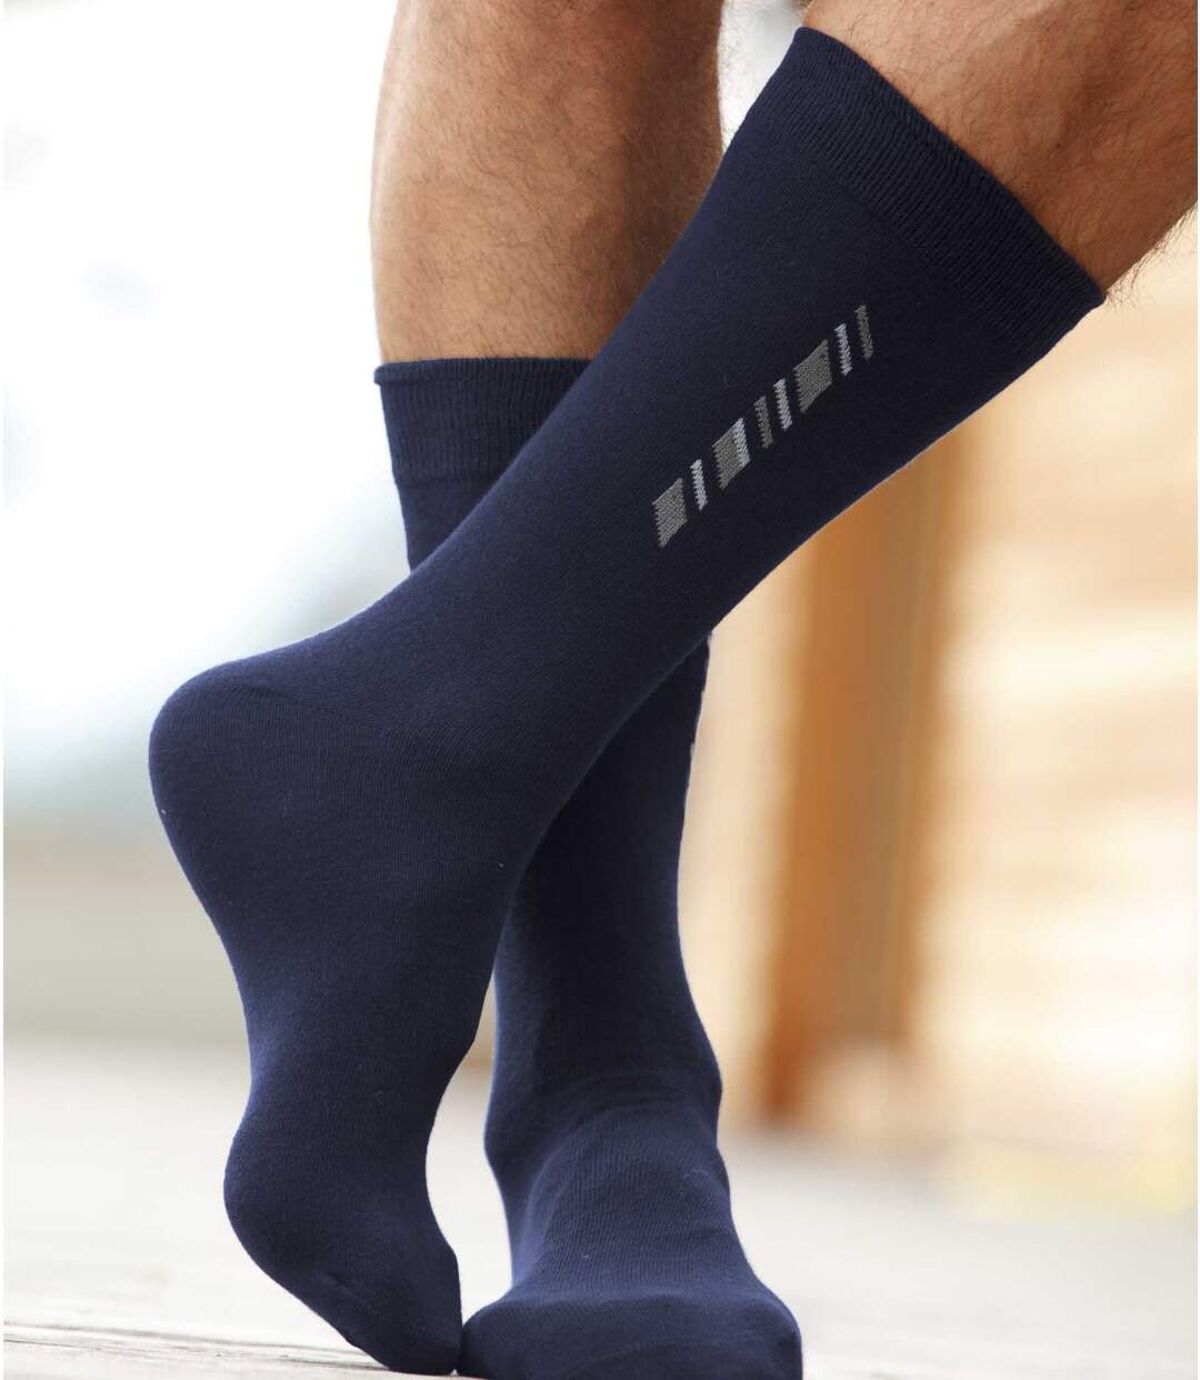 5 Pairs of Men's Patterned Socks - Black Navy Grey Atlas For Men